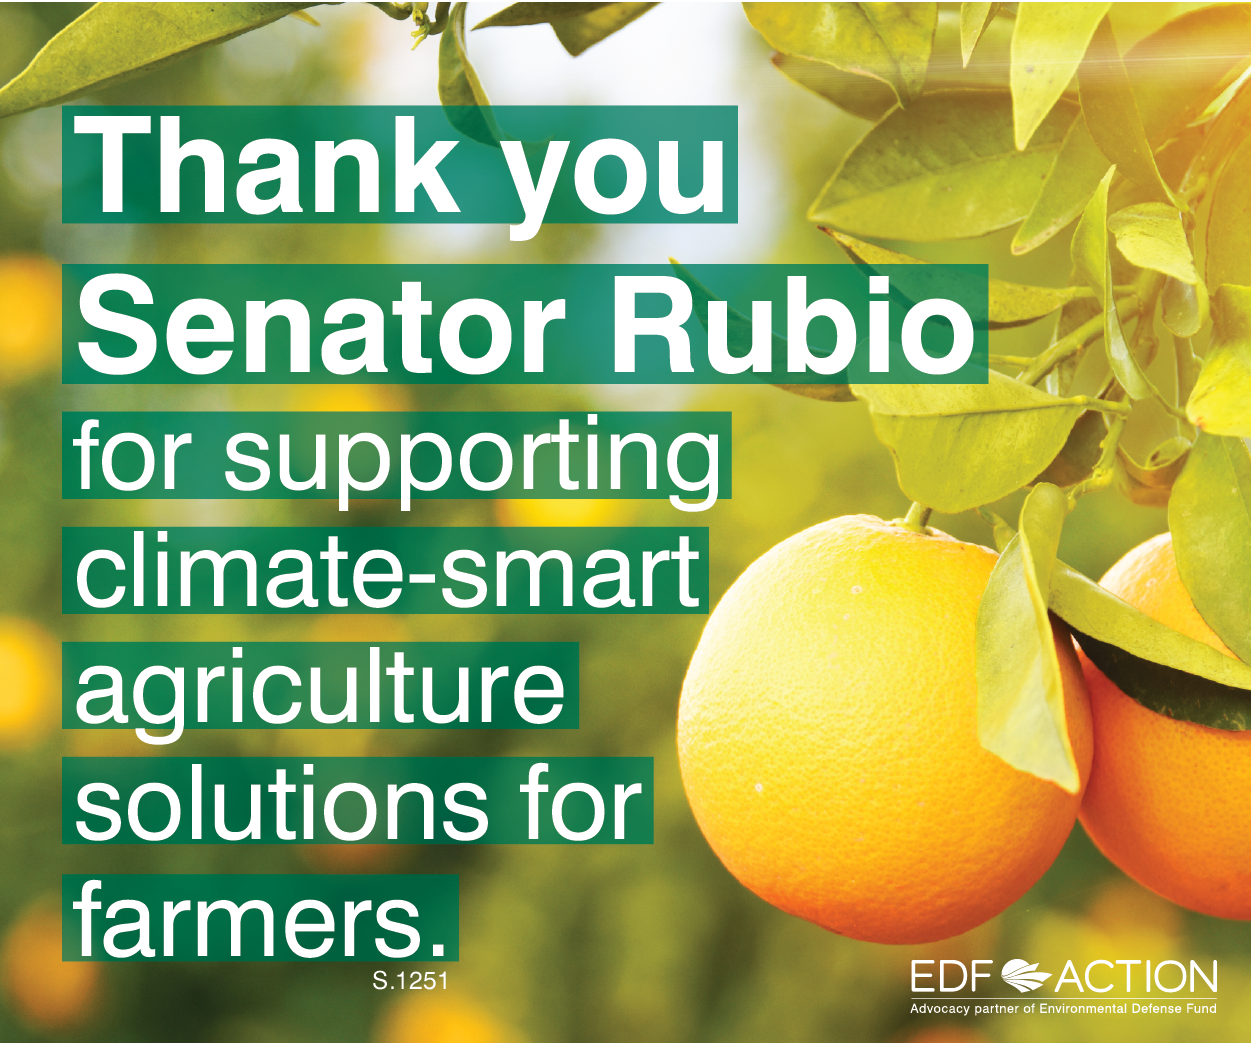 Thank you Sen. Rubio